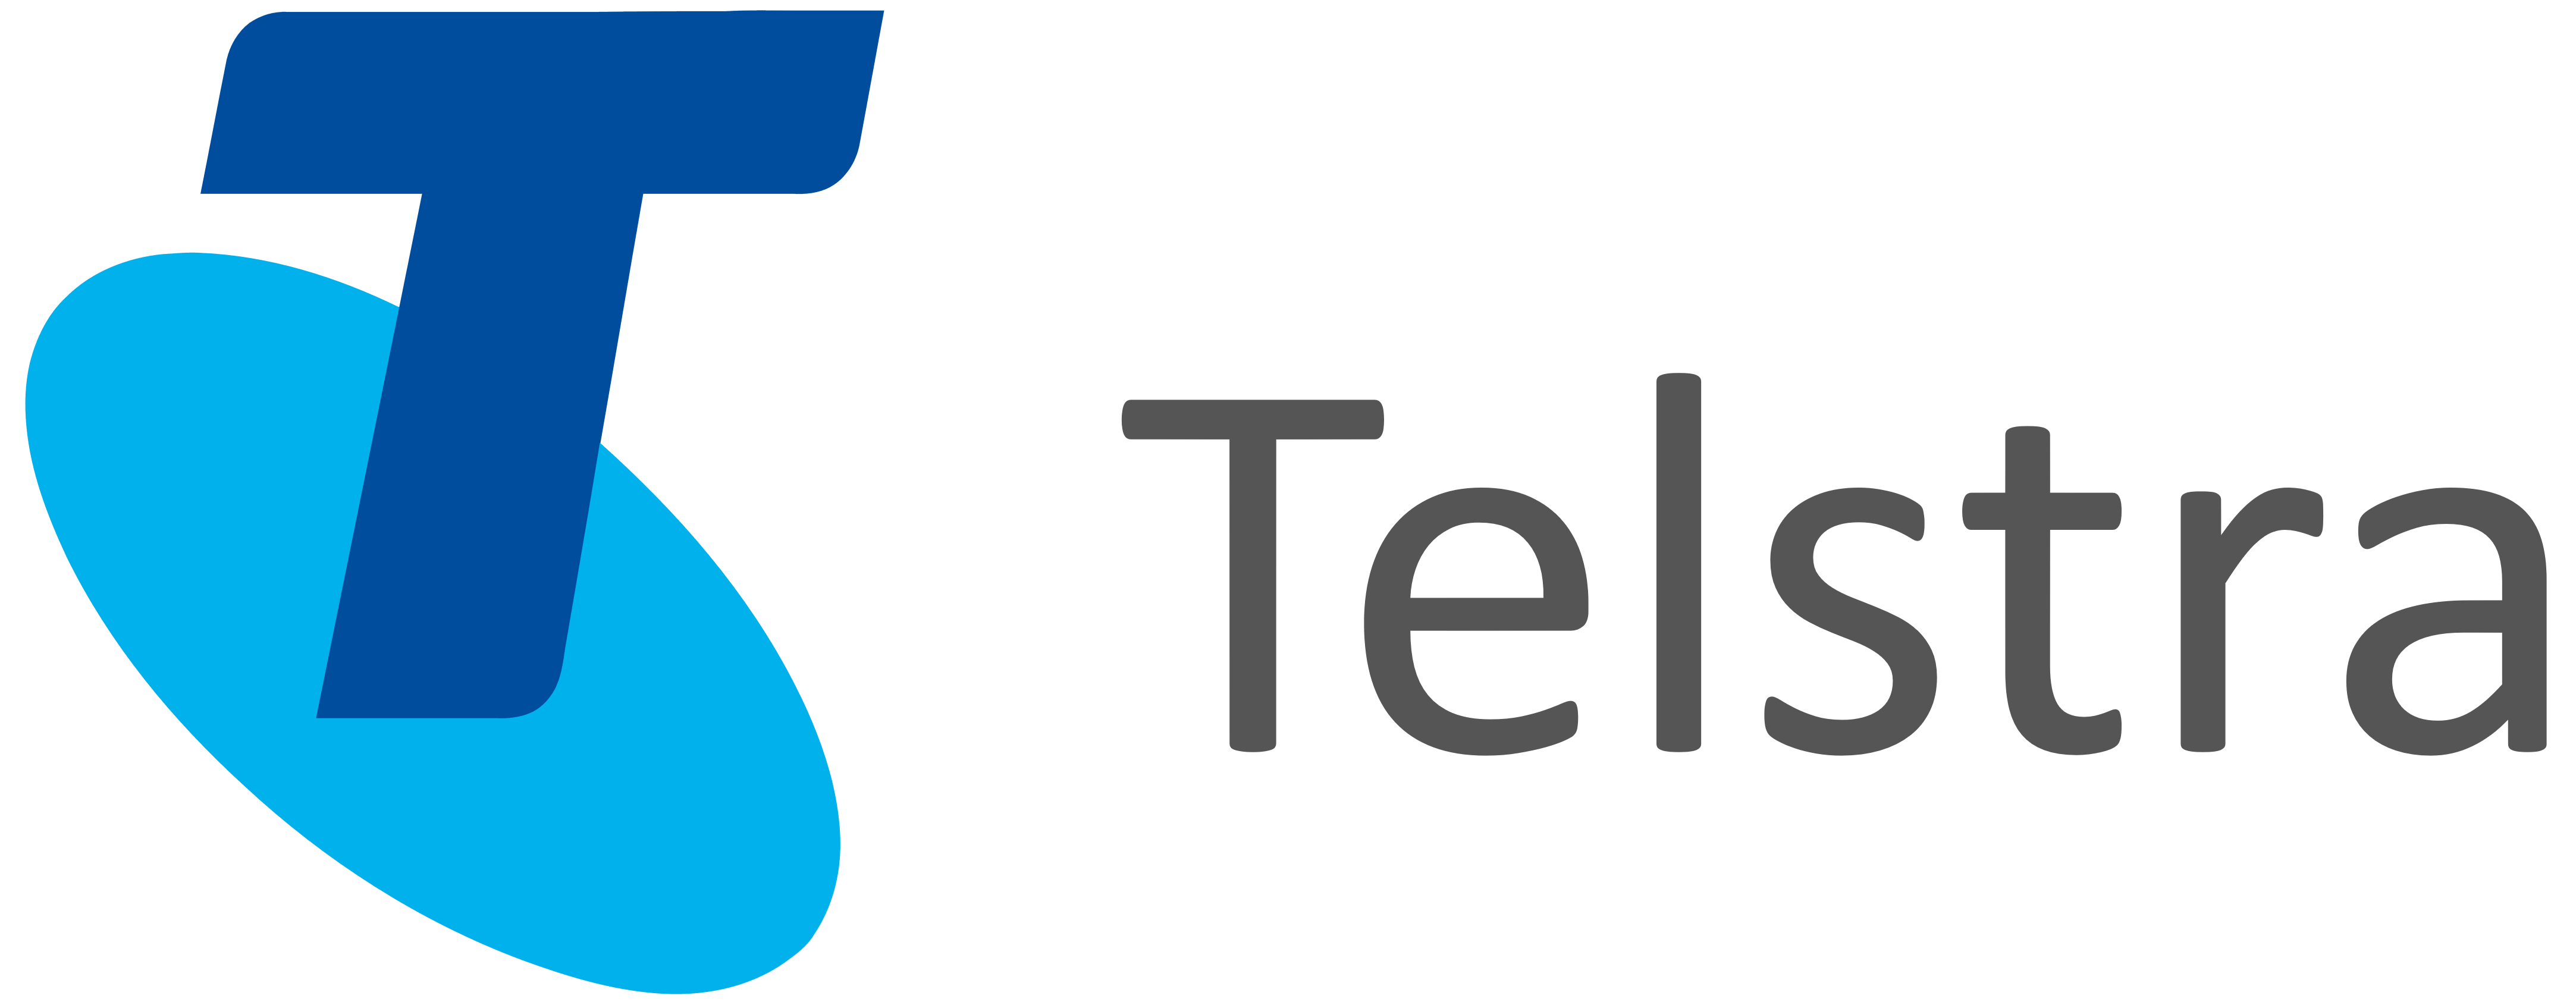 new-Telstra-logo